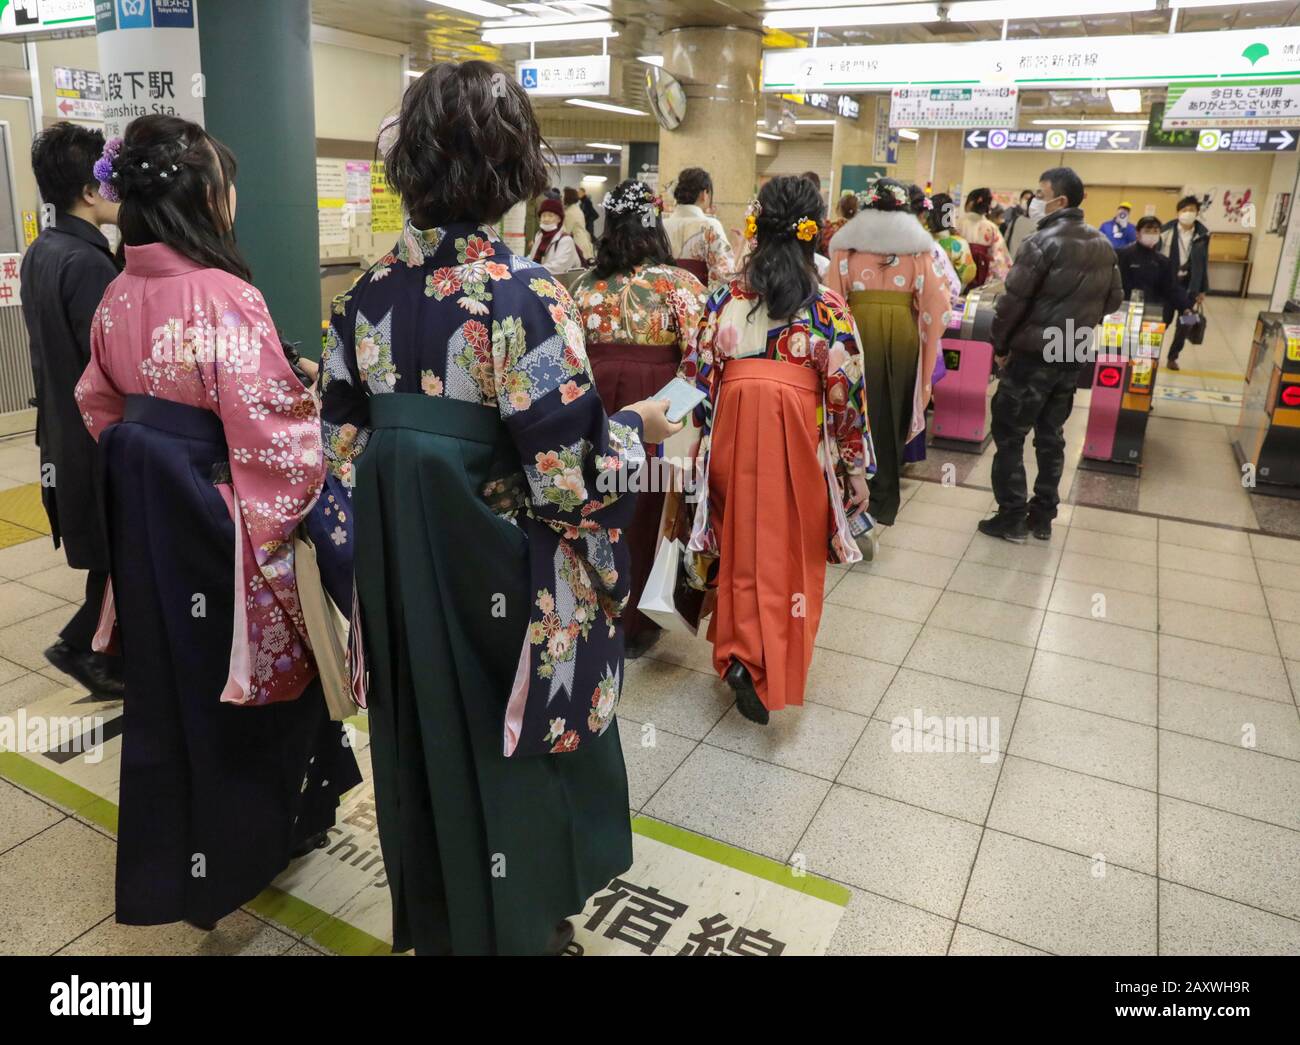 KIMONOS IN TOKYO METRO Stock Photo